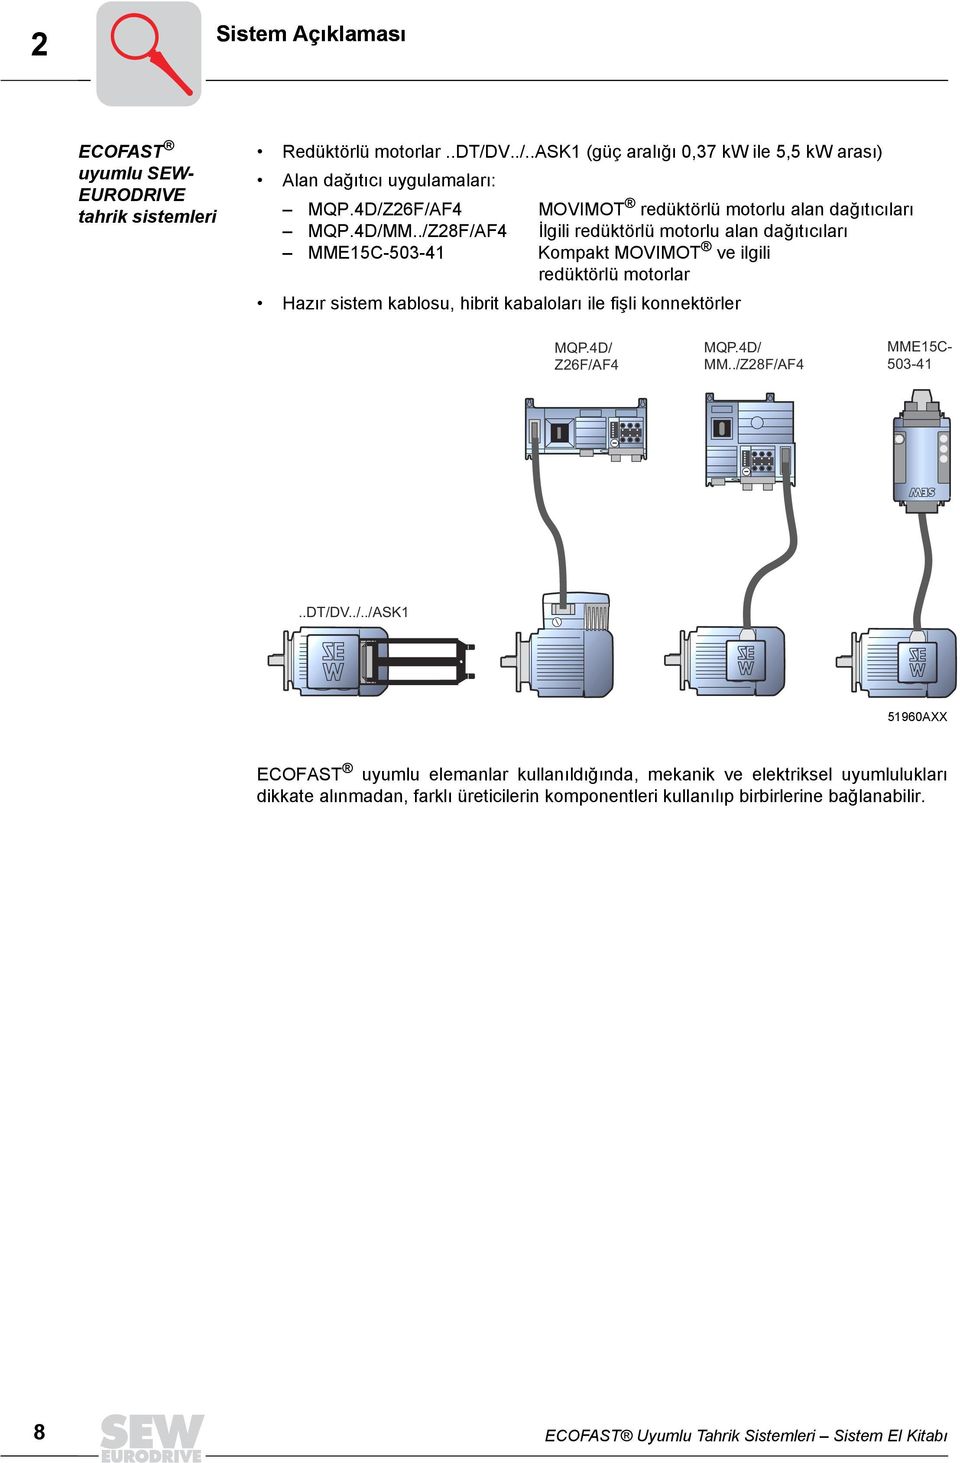 ./Z8F/AF İlgili redüktörlü motorlu alan dağõtõcõlarõ MMEC-0- Kompakt MOVIMOT ve ilgili redüktörlü motorlar Hazõr sistem kablosu, hibrit kabalolarõ ile fişli konnektörler